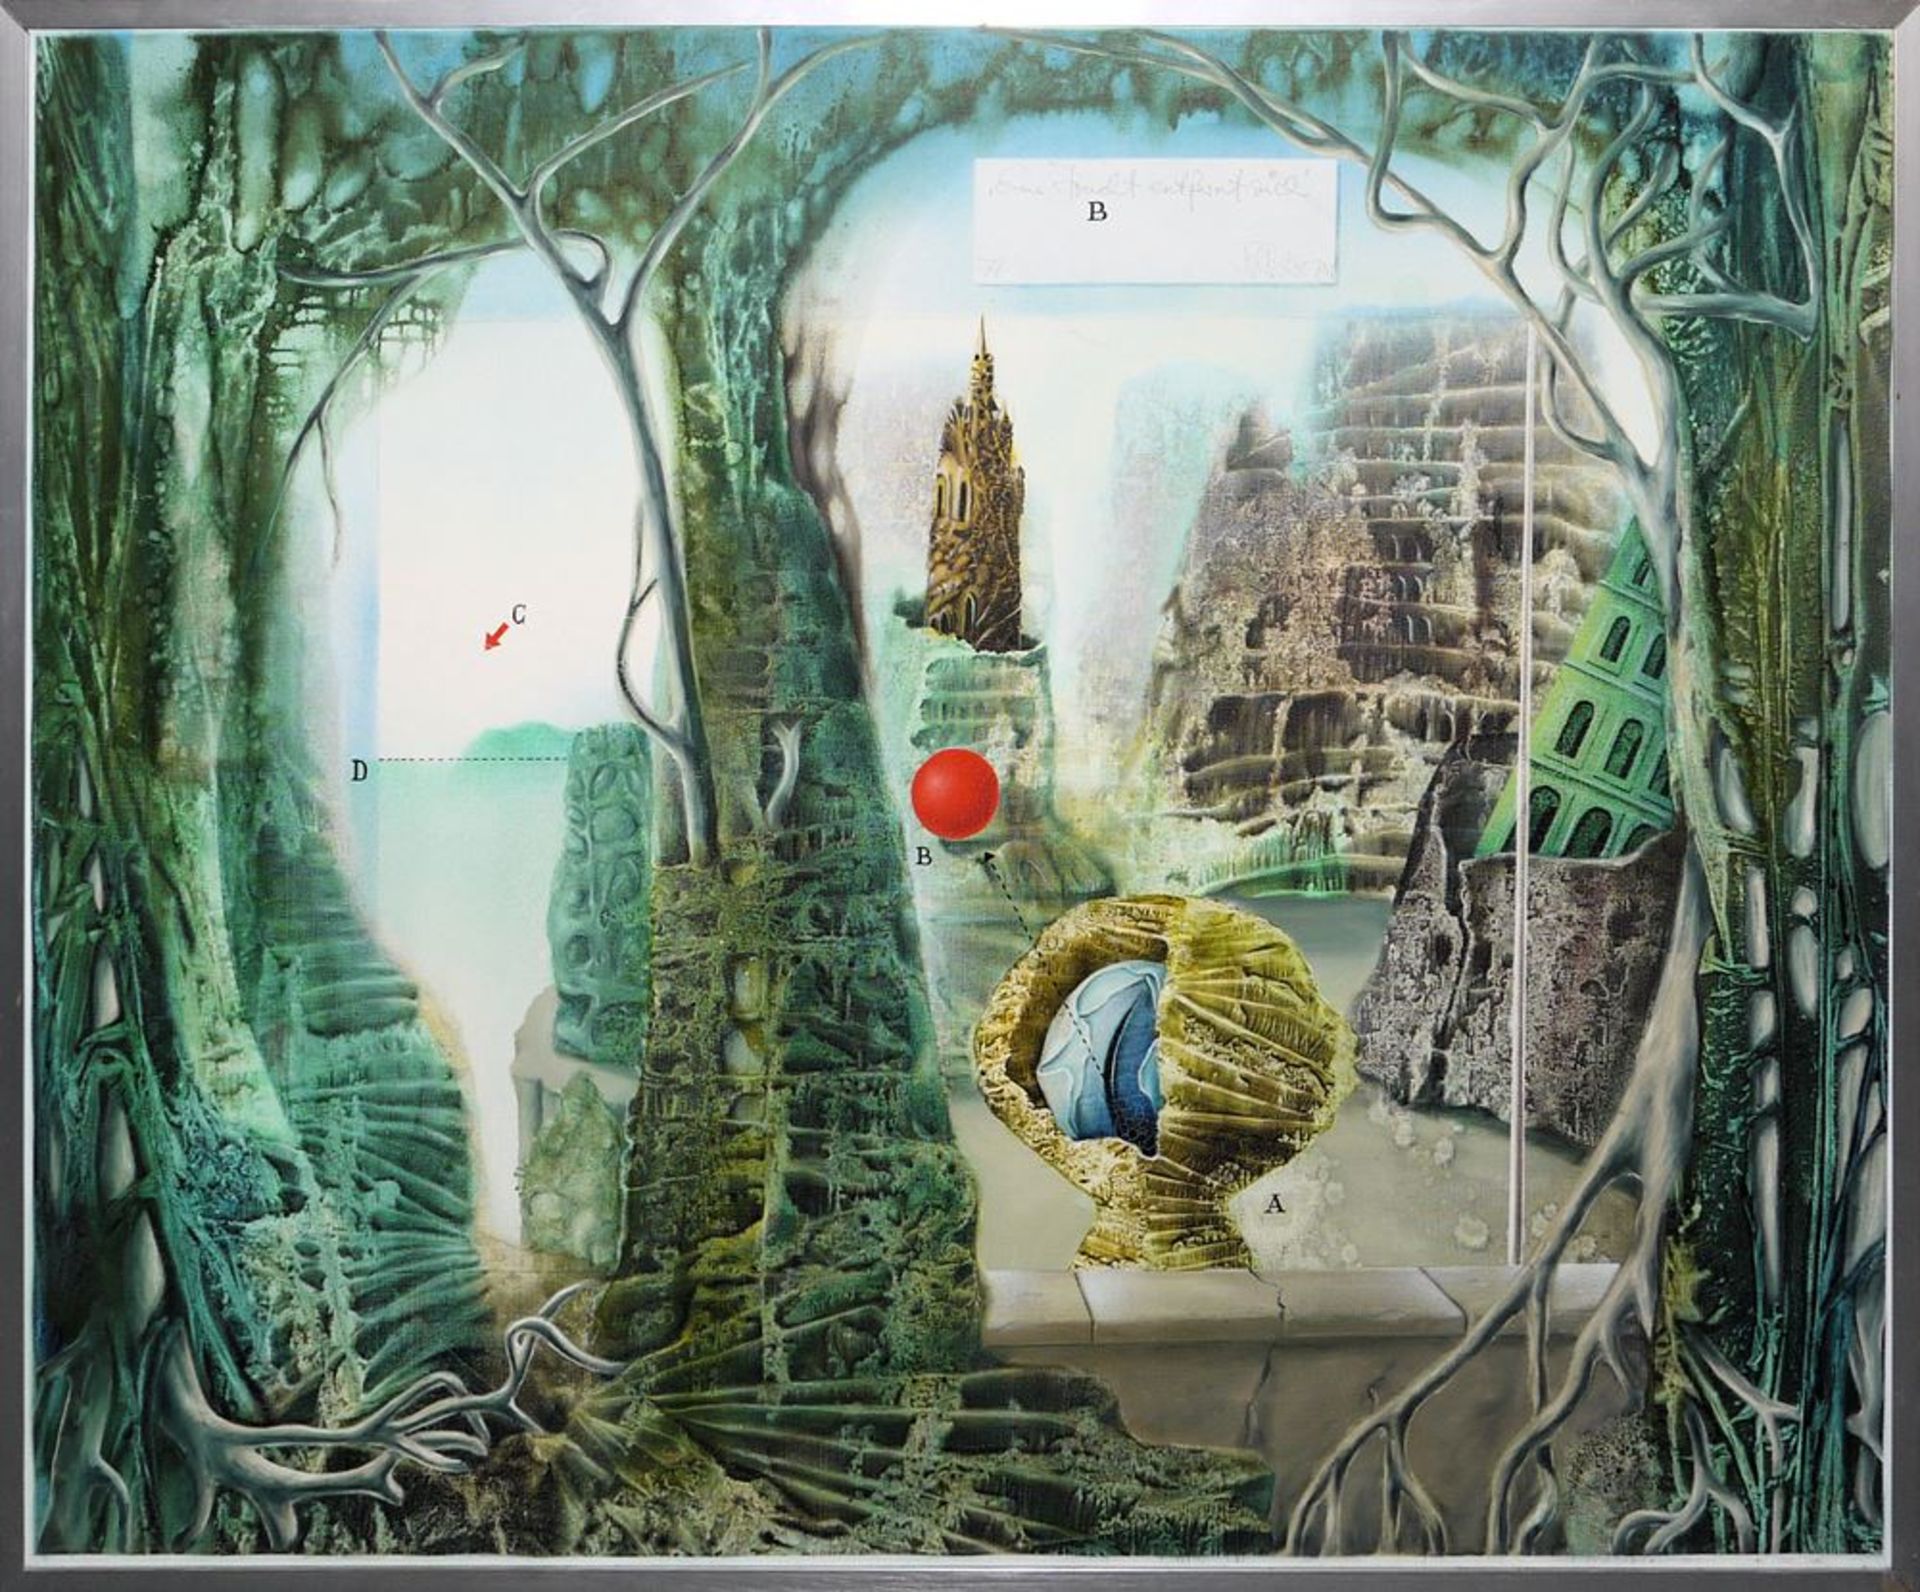 Klaus Heinrich Keller, "Eine Frucht entfernt sich", surrealistic-fantastic oil painting from 1974, 